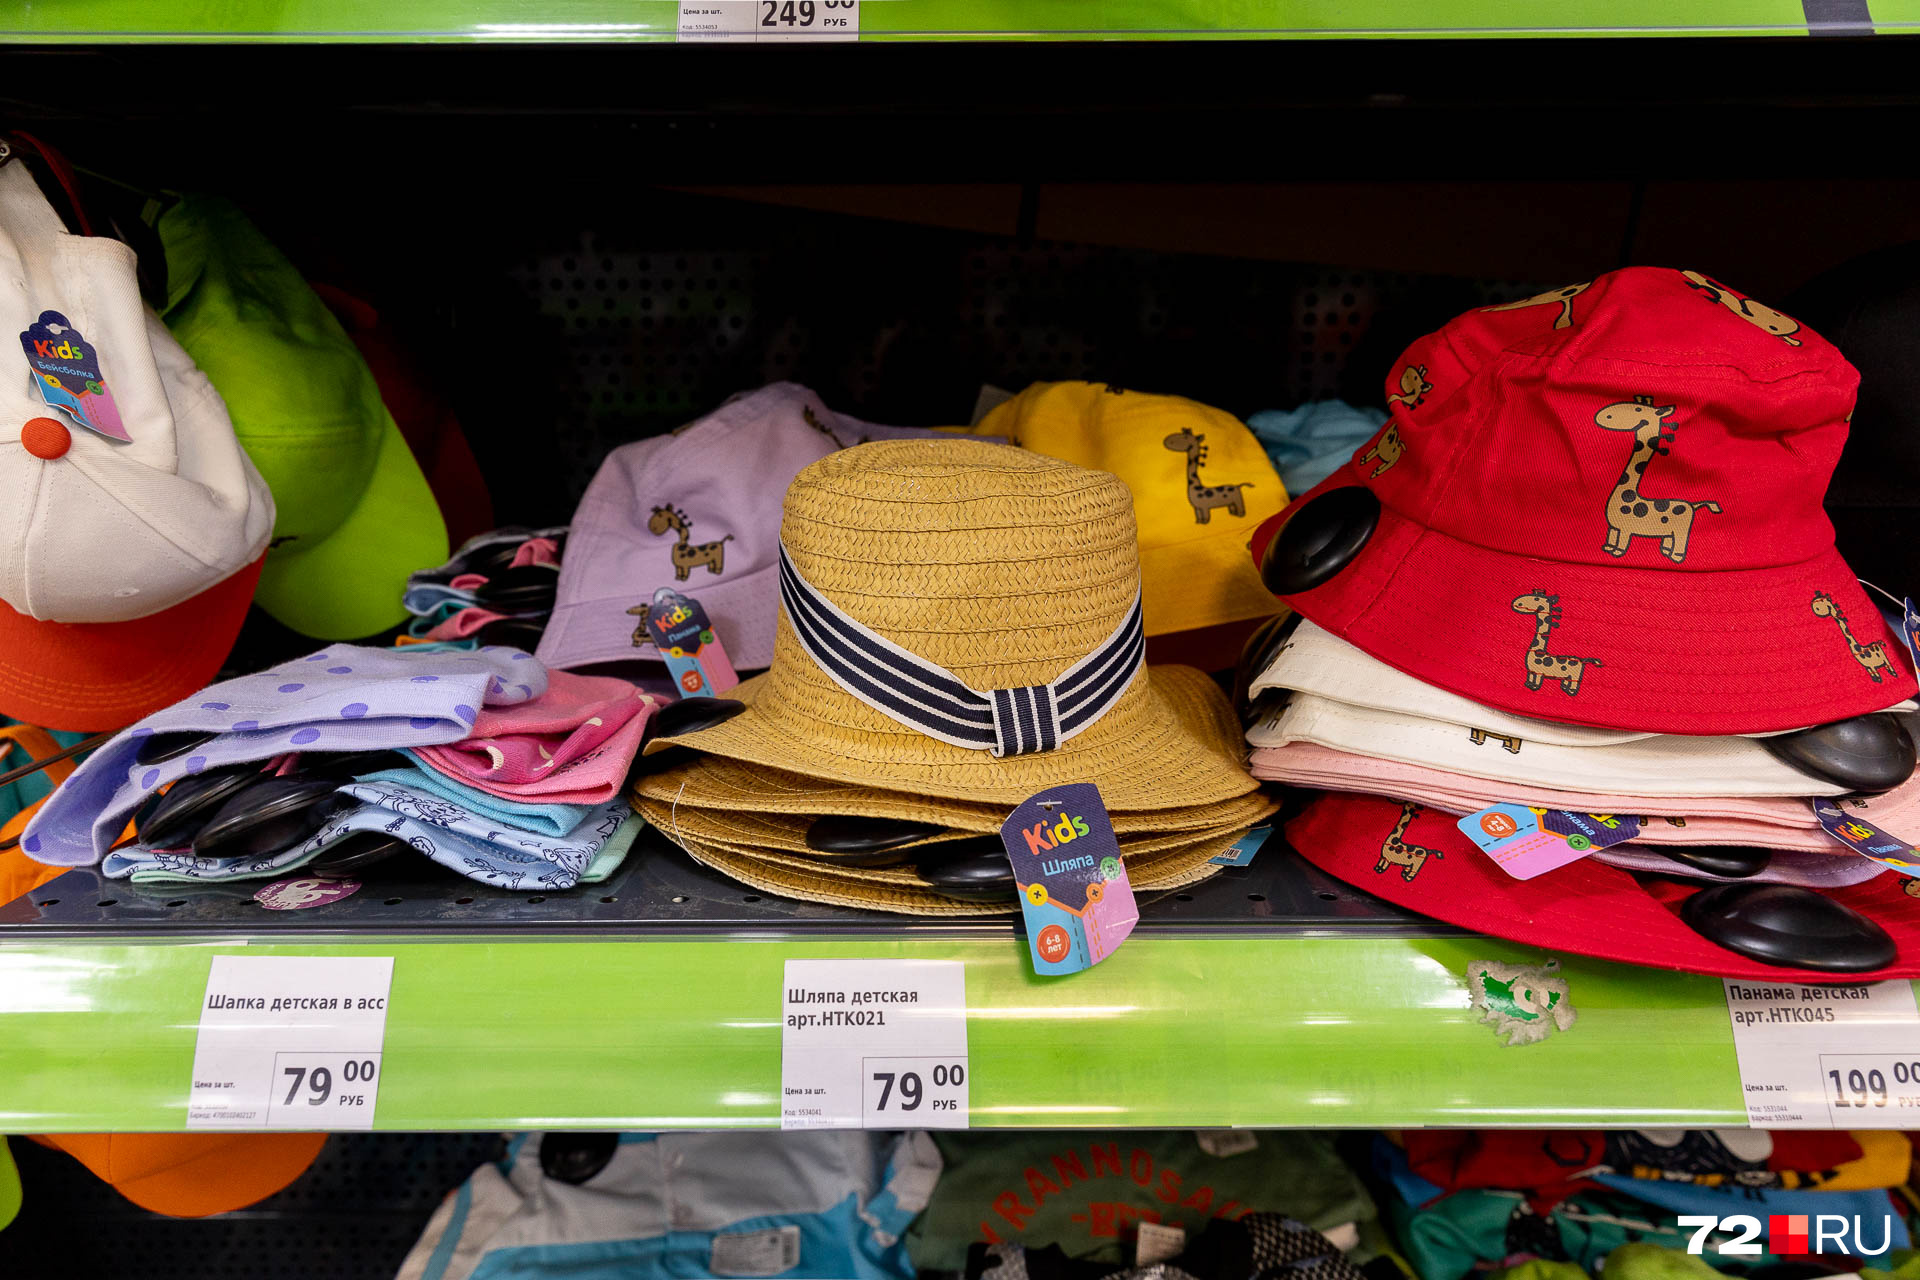 Самые бюджетные детские шляпки и панамки — по 79 рублей, те, что подороже, — за 199